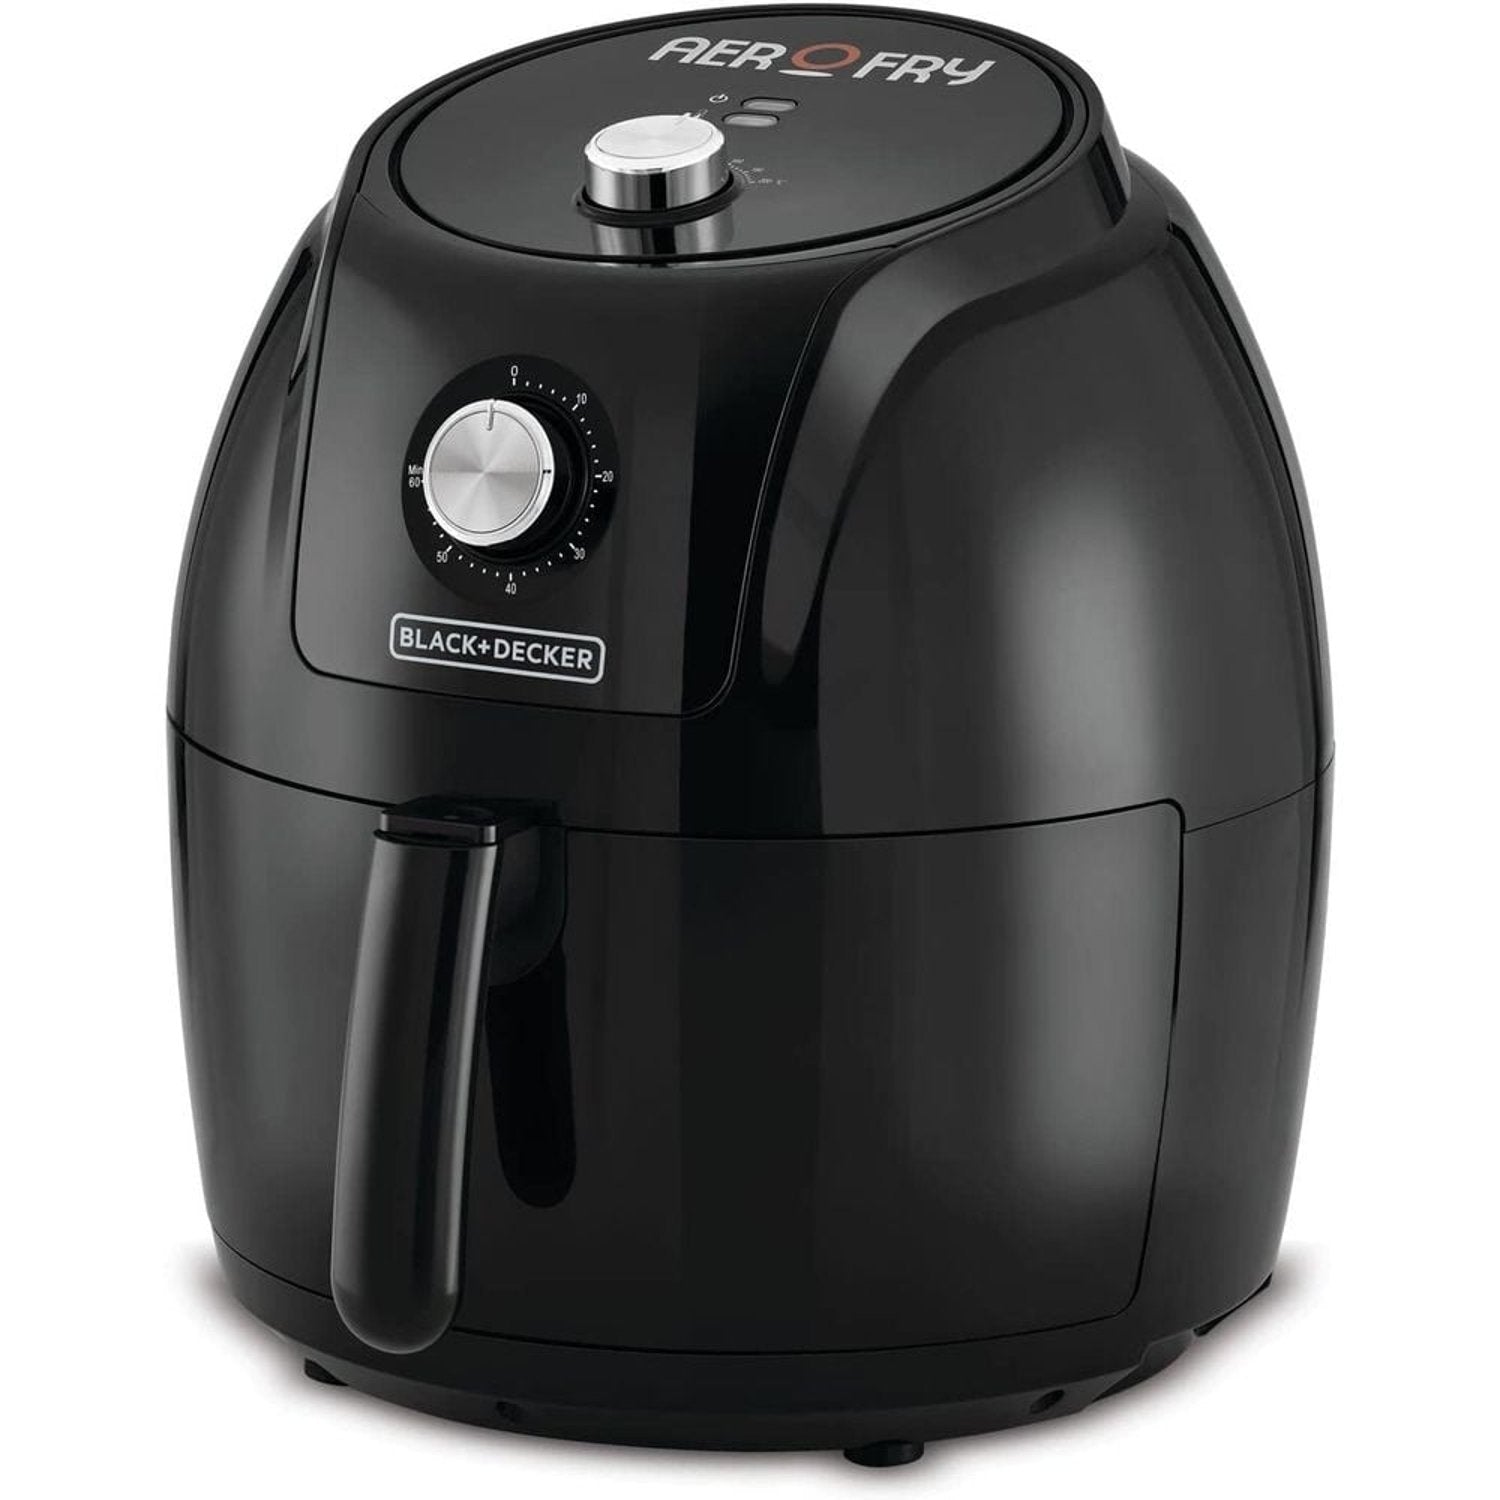 Black & Decker Air Fryer Black 1800W | Kitchen Appliances | Halabh.com